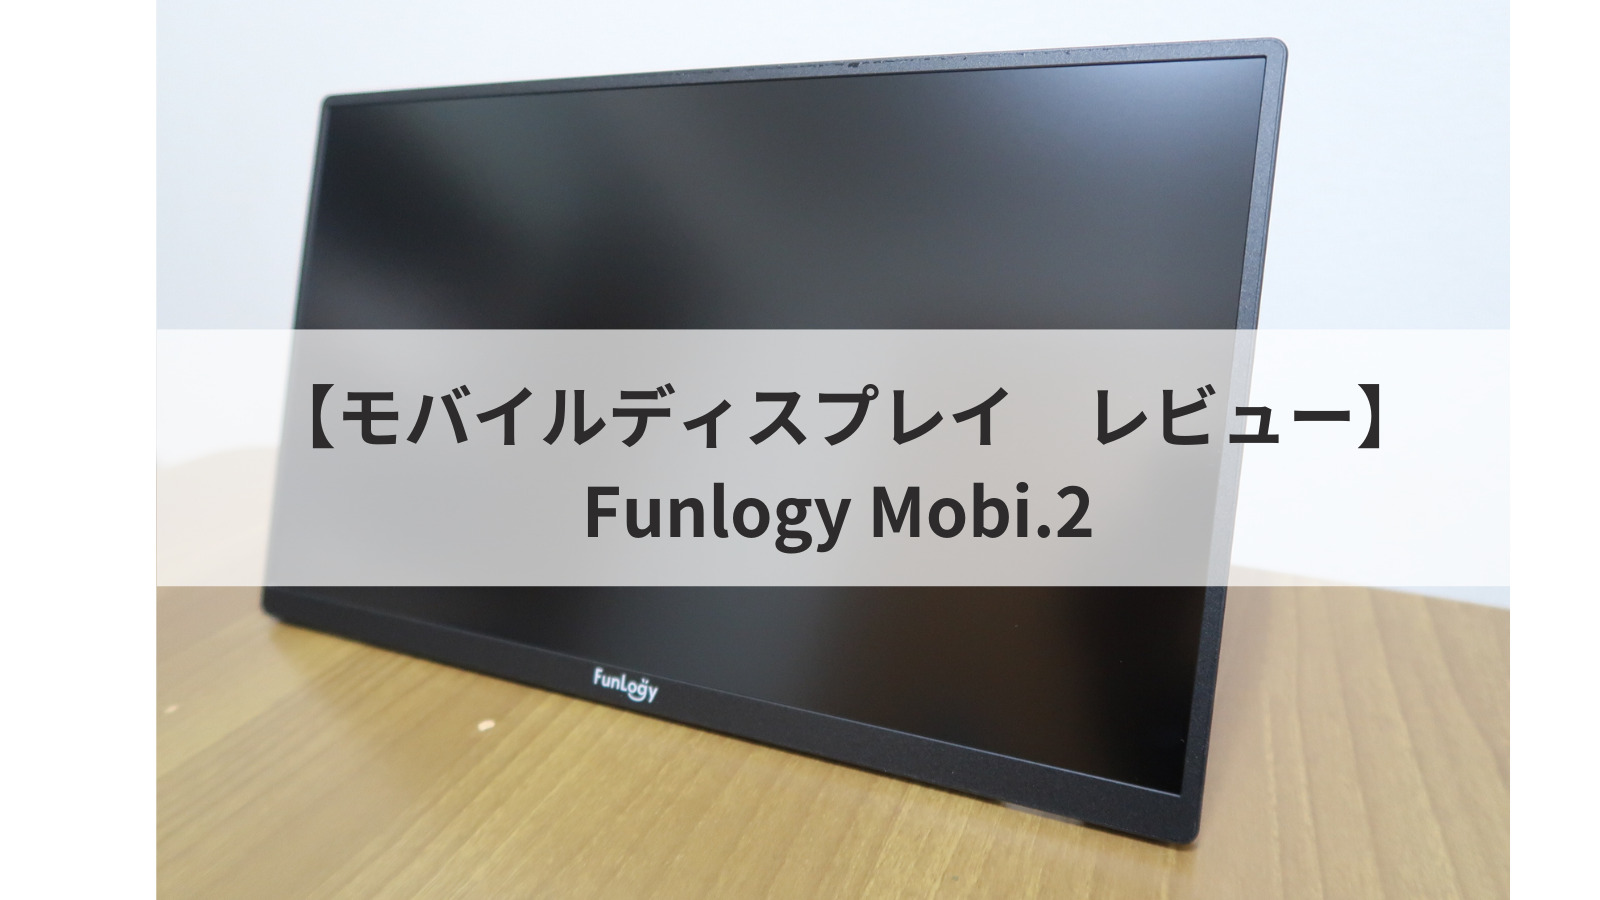 【美品】FunLogy Mobi.2 / モバイルモニター